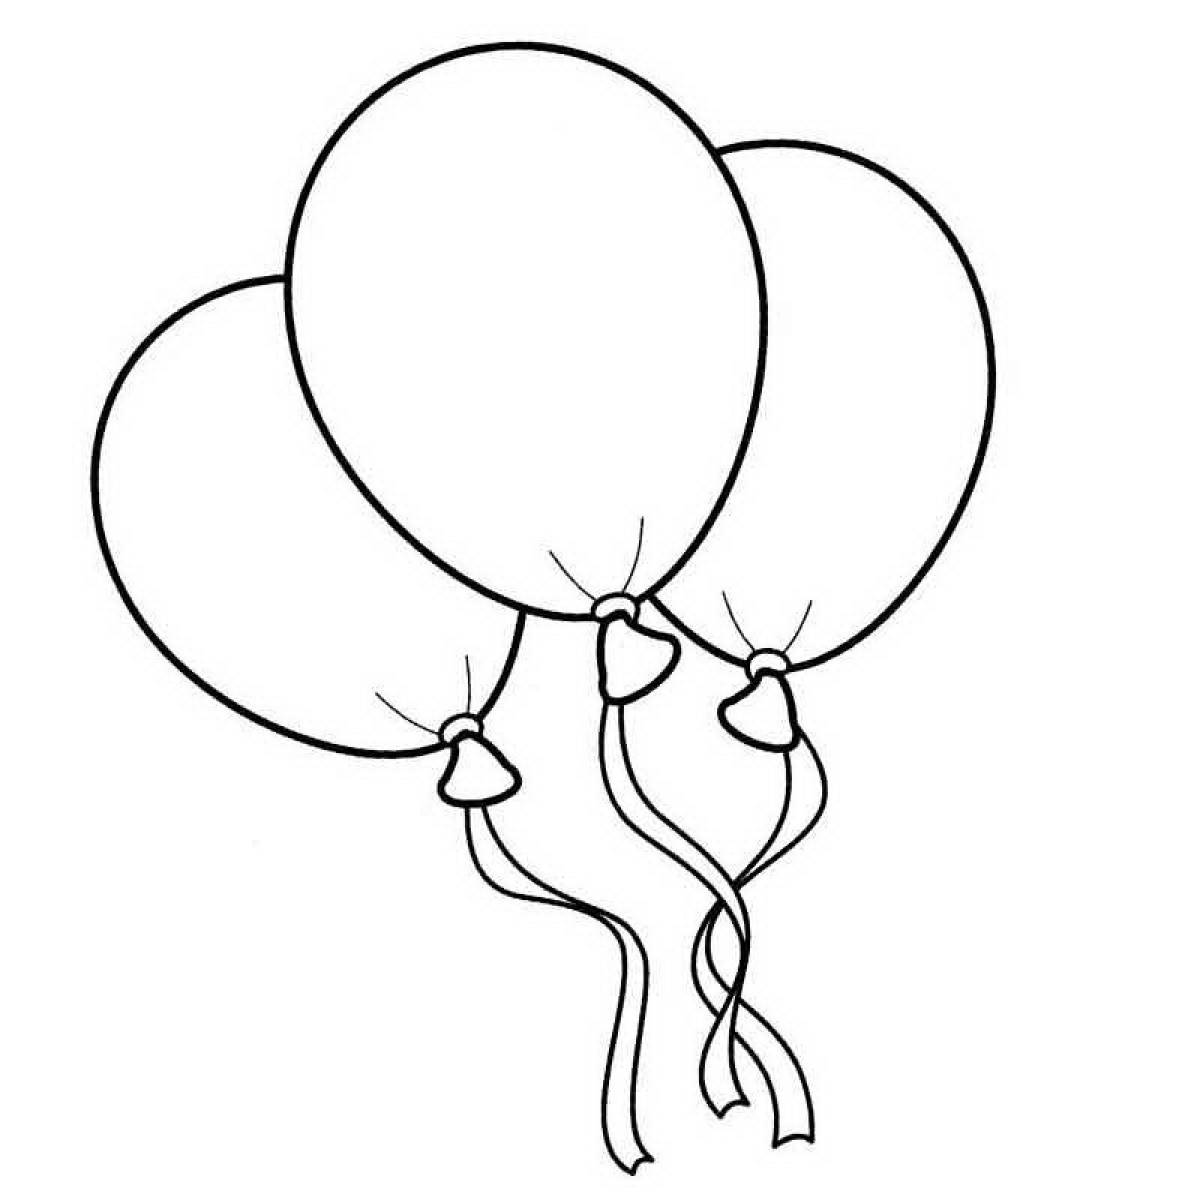 Balloons for kids #10